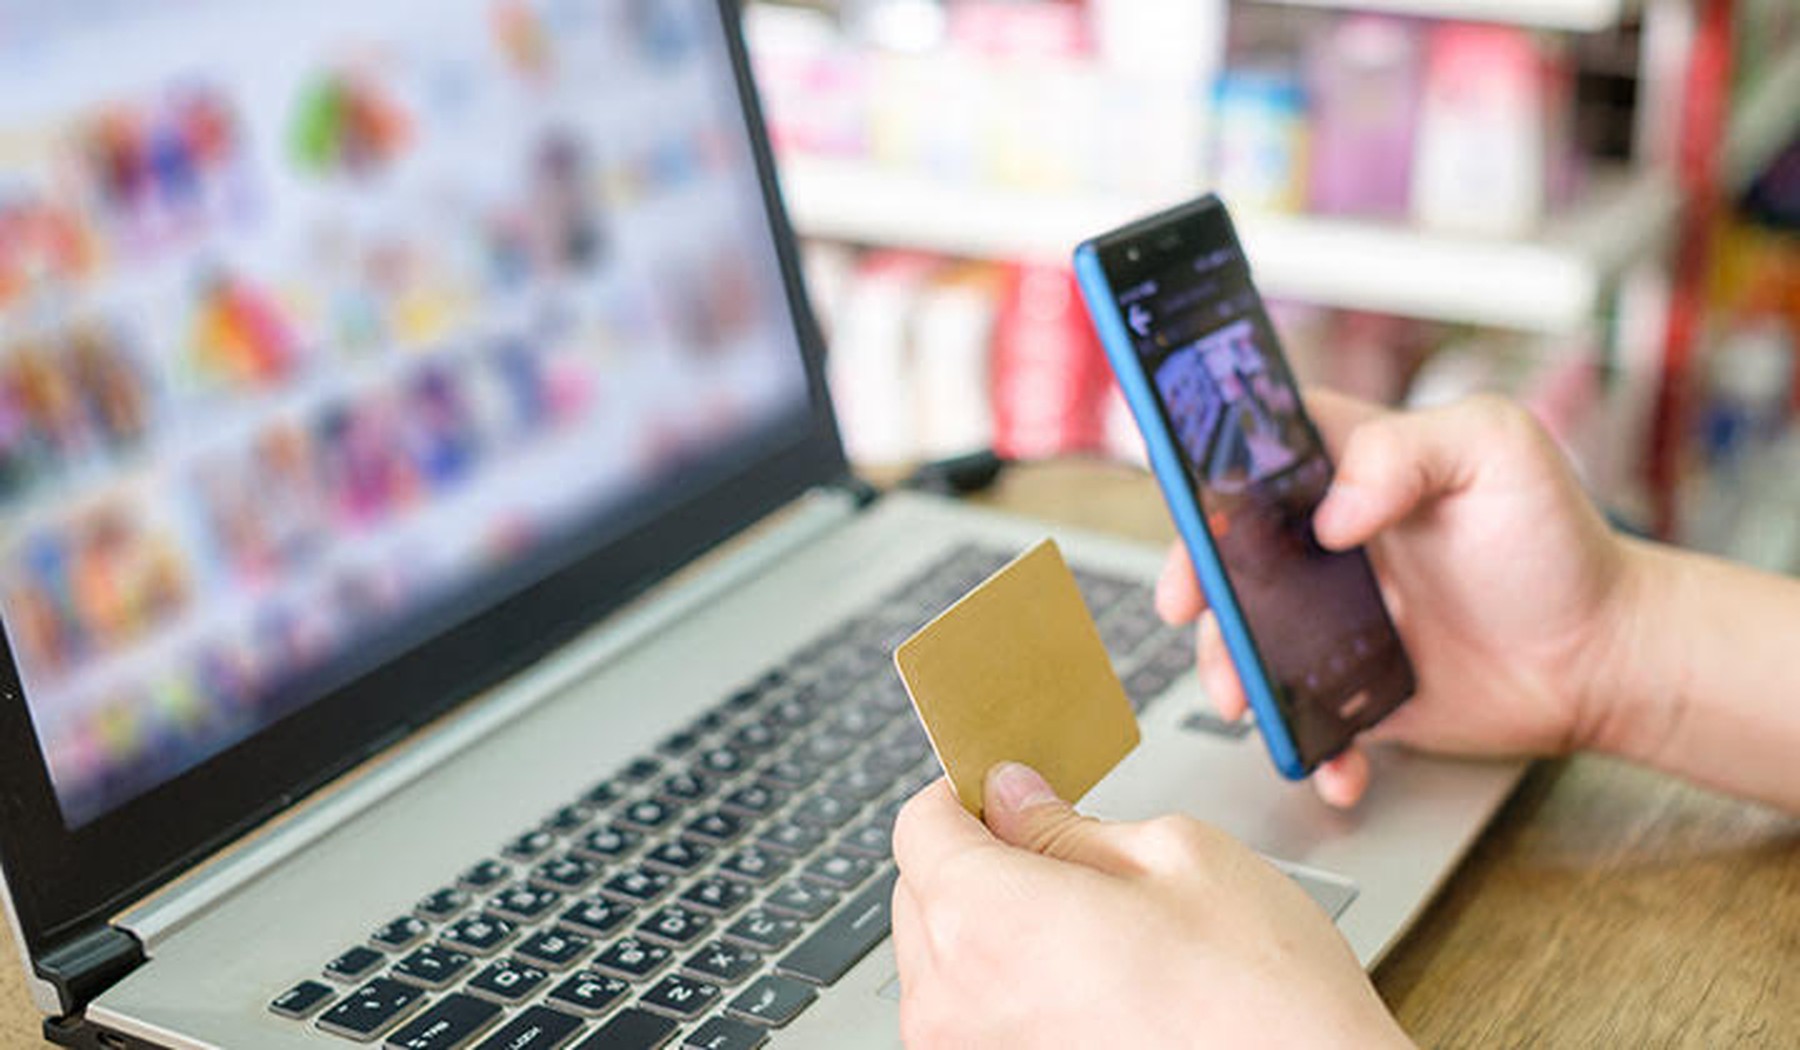 Een persoon heeft een laptop en telefoon bij zich en gebruikt een bankkaart om producten te kopen